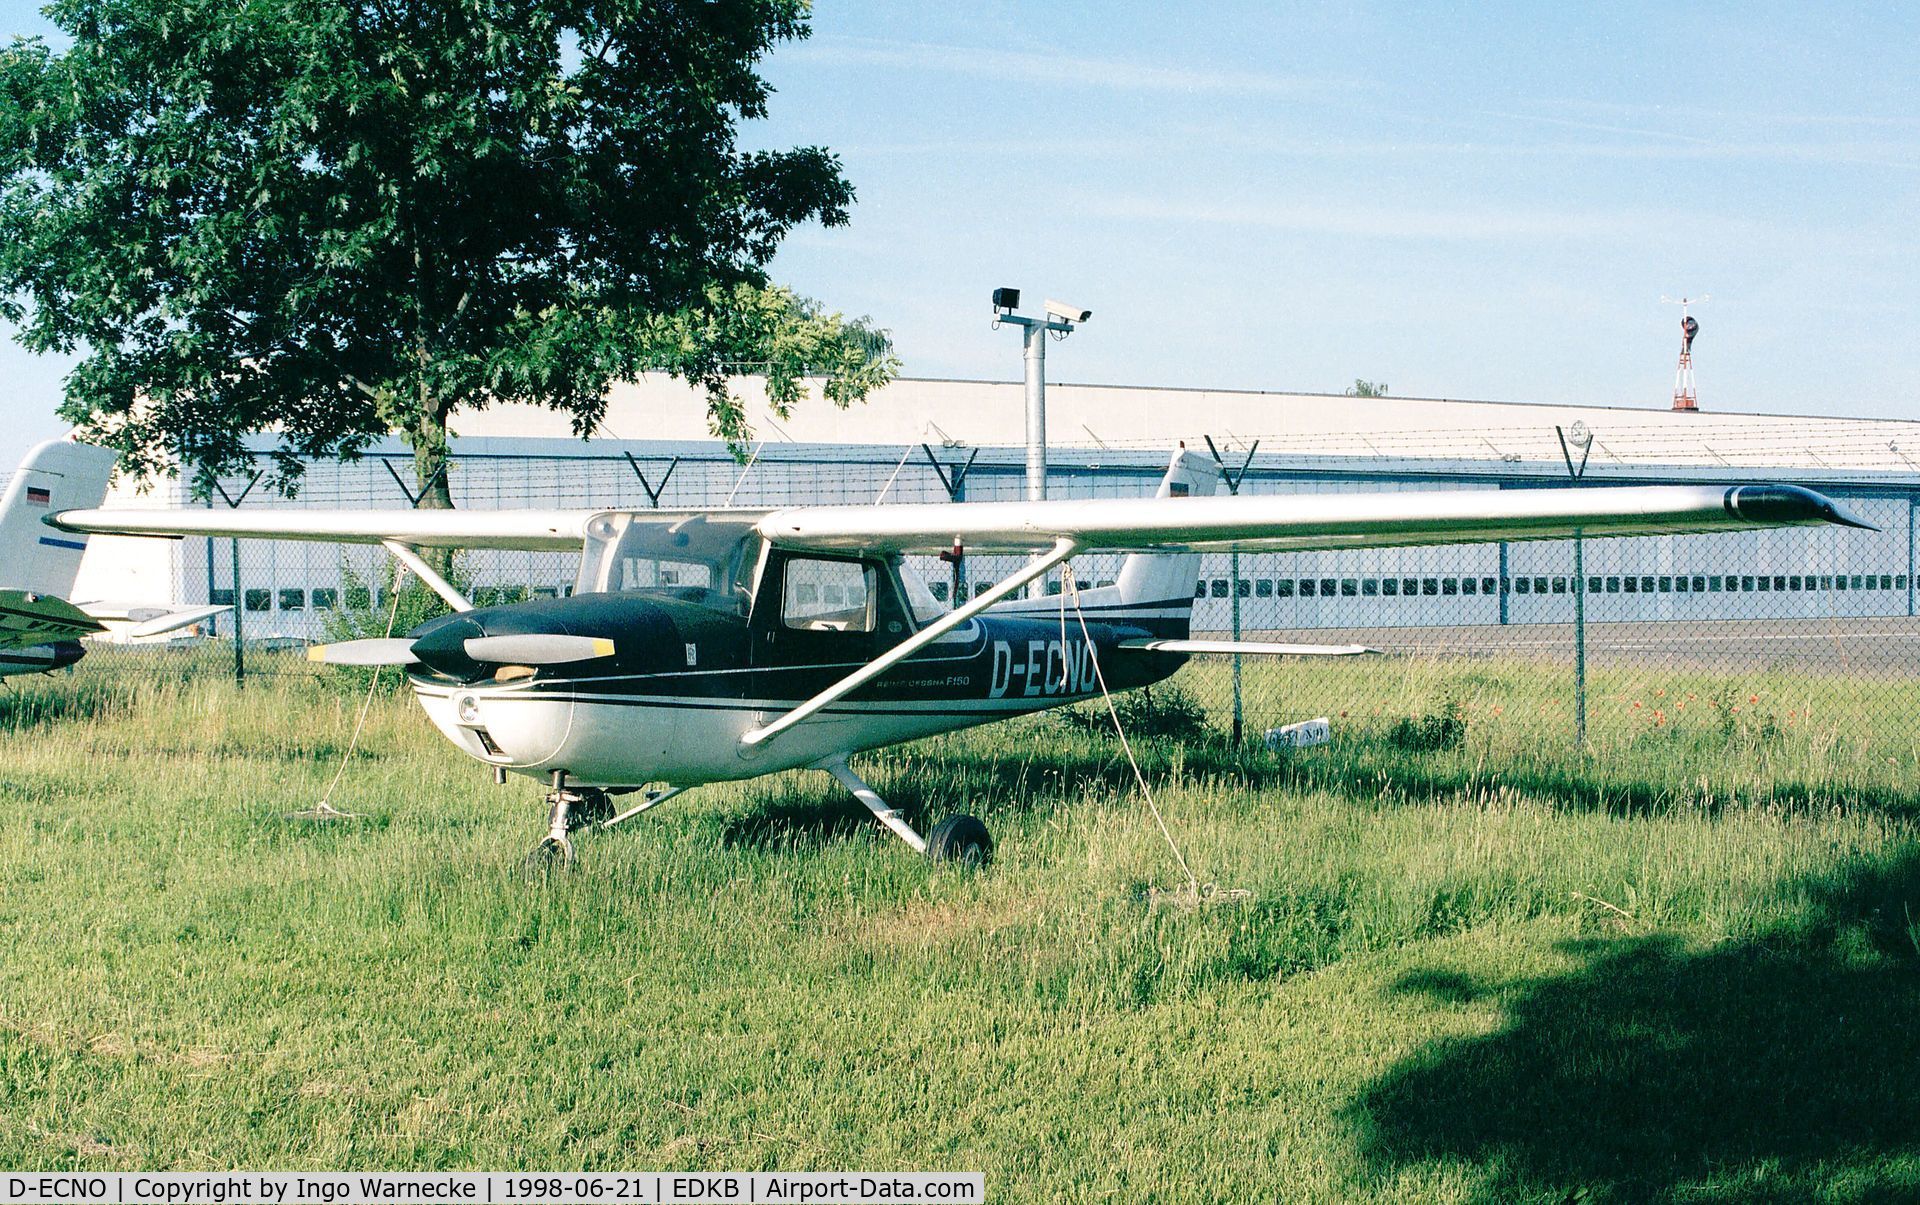 D-ECNO, 1967 Cessna 150G C/N 15066927, Cessna 150G at Bonn-Hangelar airfield